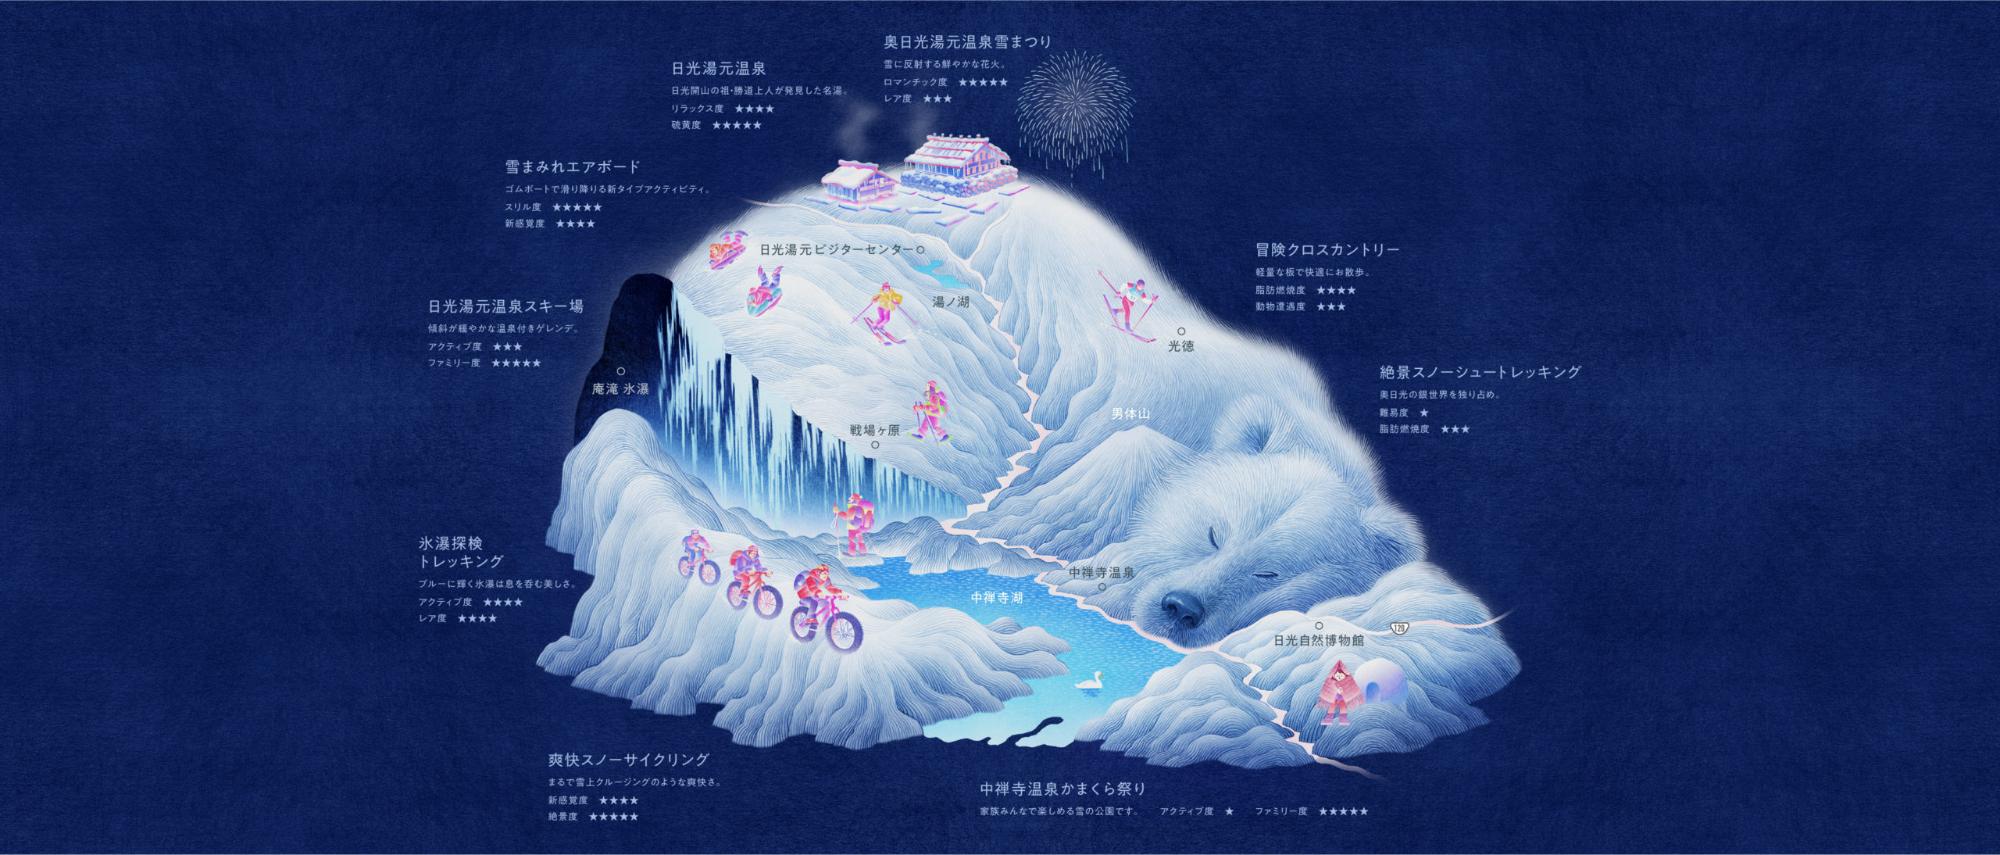 シロクマが寝ている姿に雪の遊園地のマップが描かれているイラスト